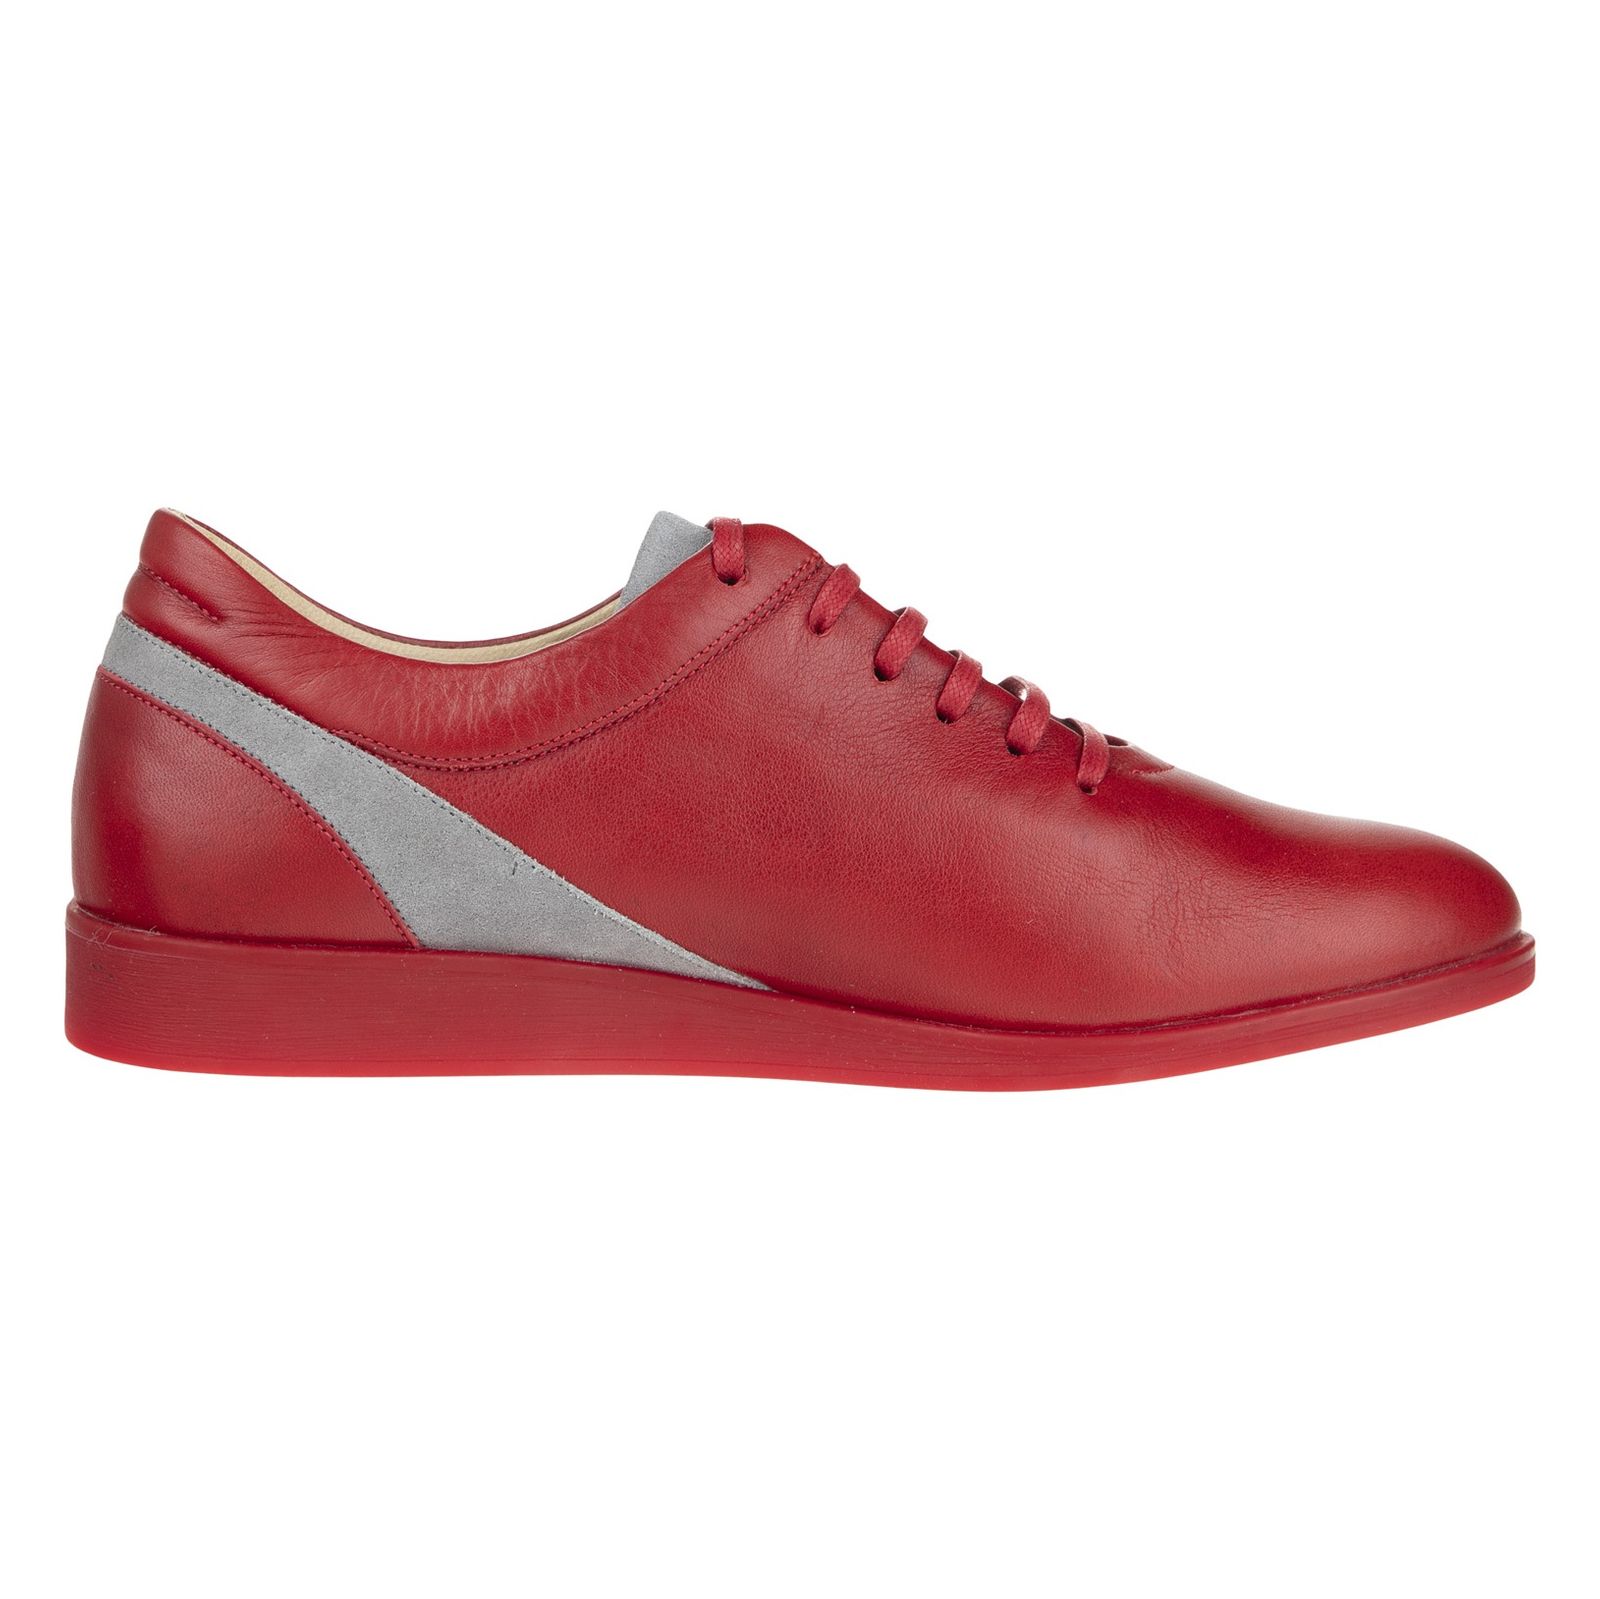 کفش روزمره زنانه برتونیکس مدل 960-24 - قرمز - 3